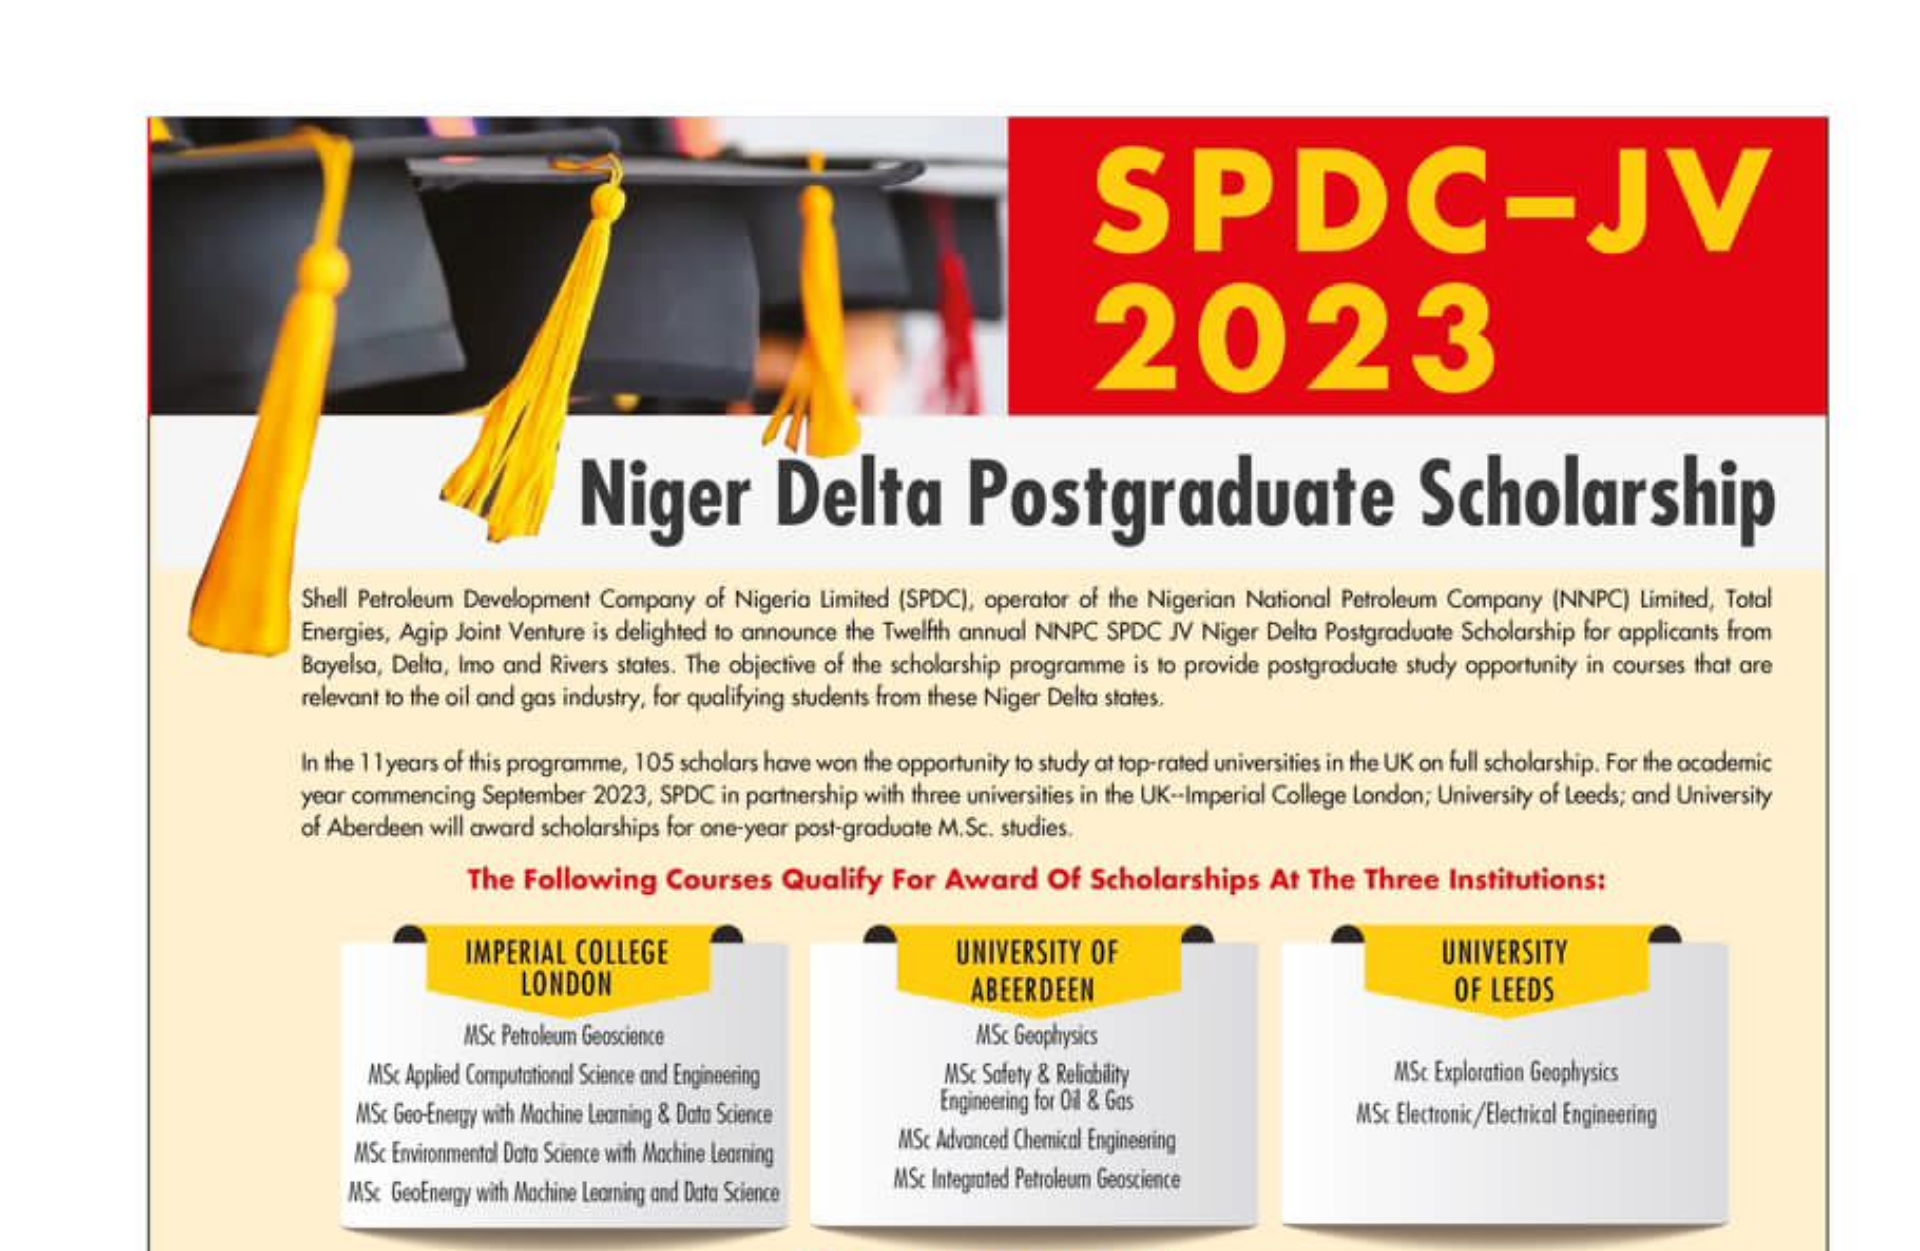 SPDC 2023 Niger Delta Postgraduate Scholarship Requirements